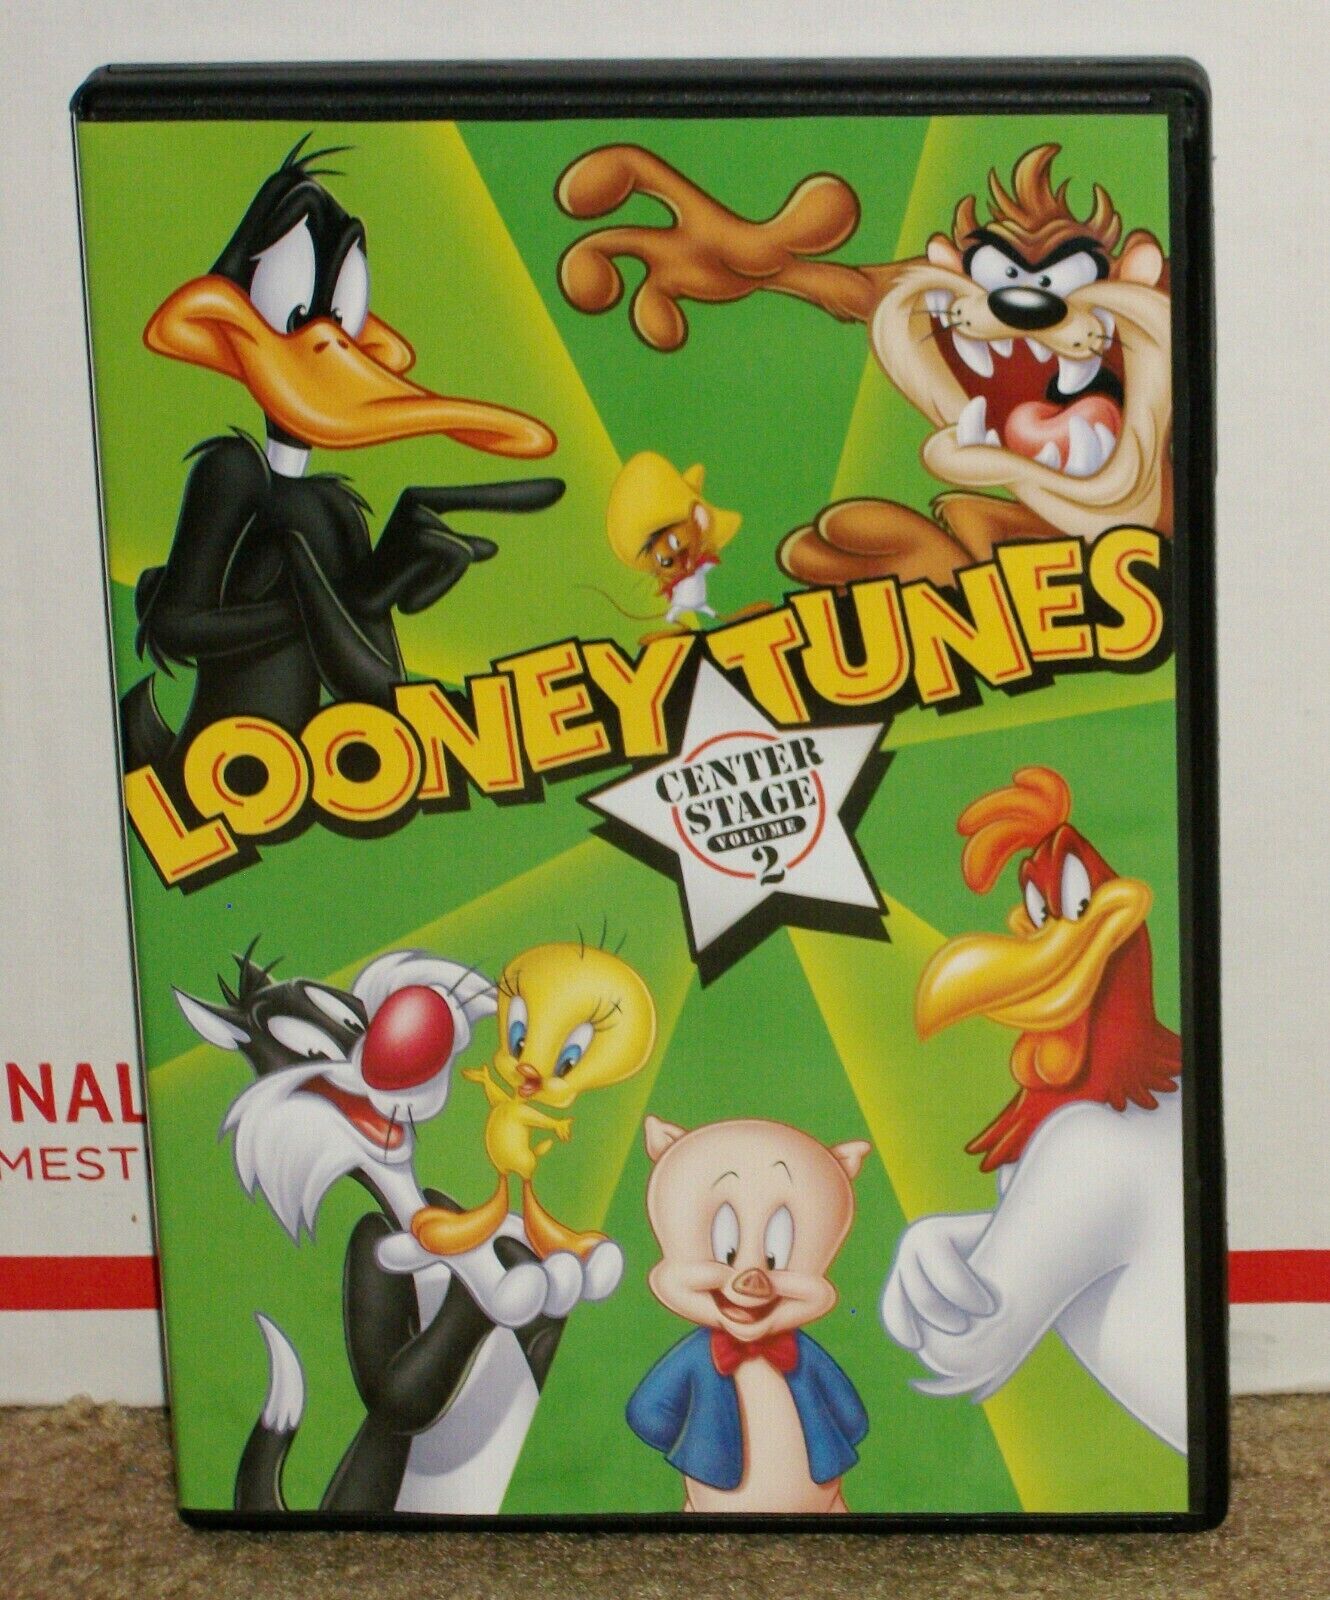 Looney Tunes: Center Stage Volume 2 (DVD)